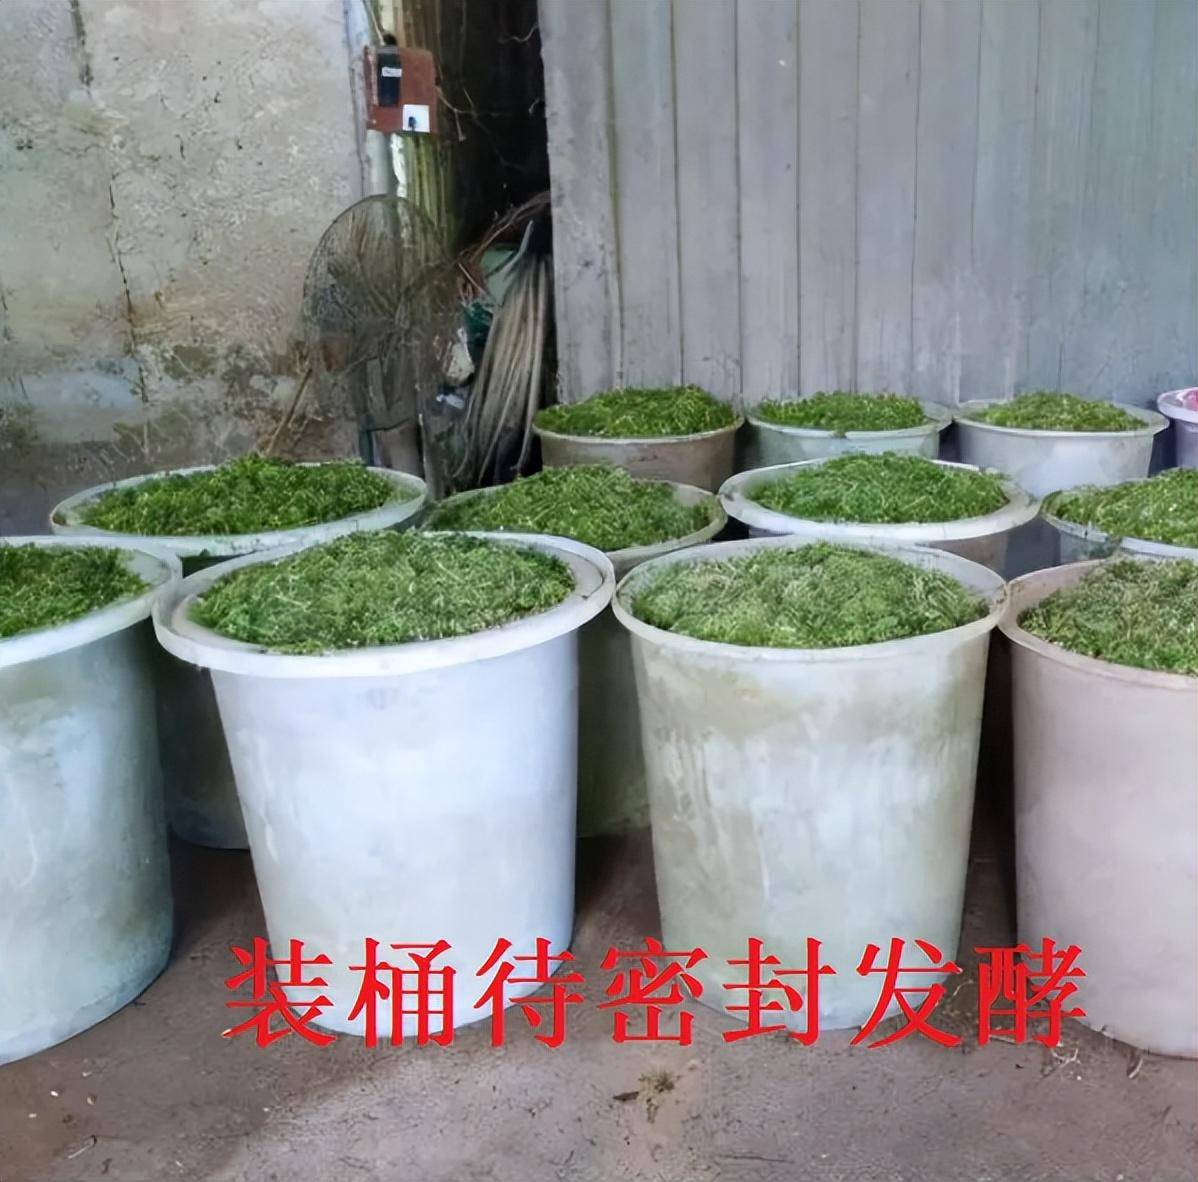 柳州潘老板使用发酵玉米秸秆养鸡有效降低成本,鸡群健康水平高!